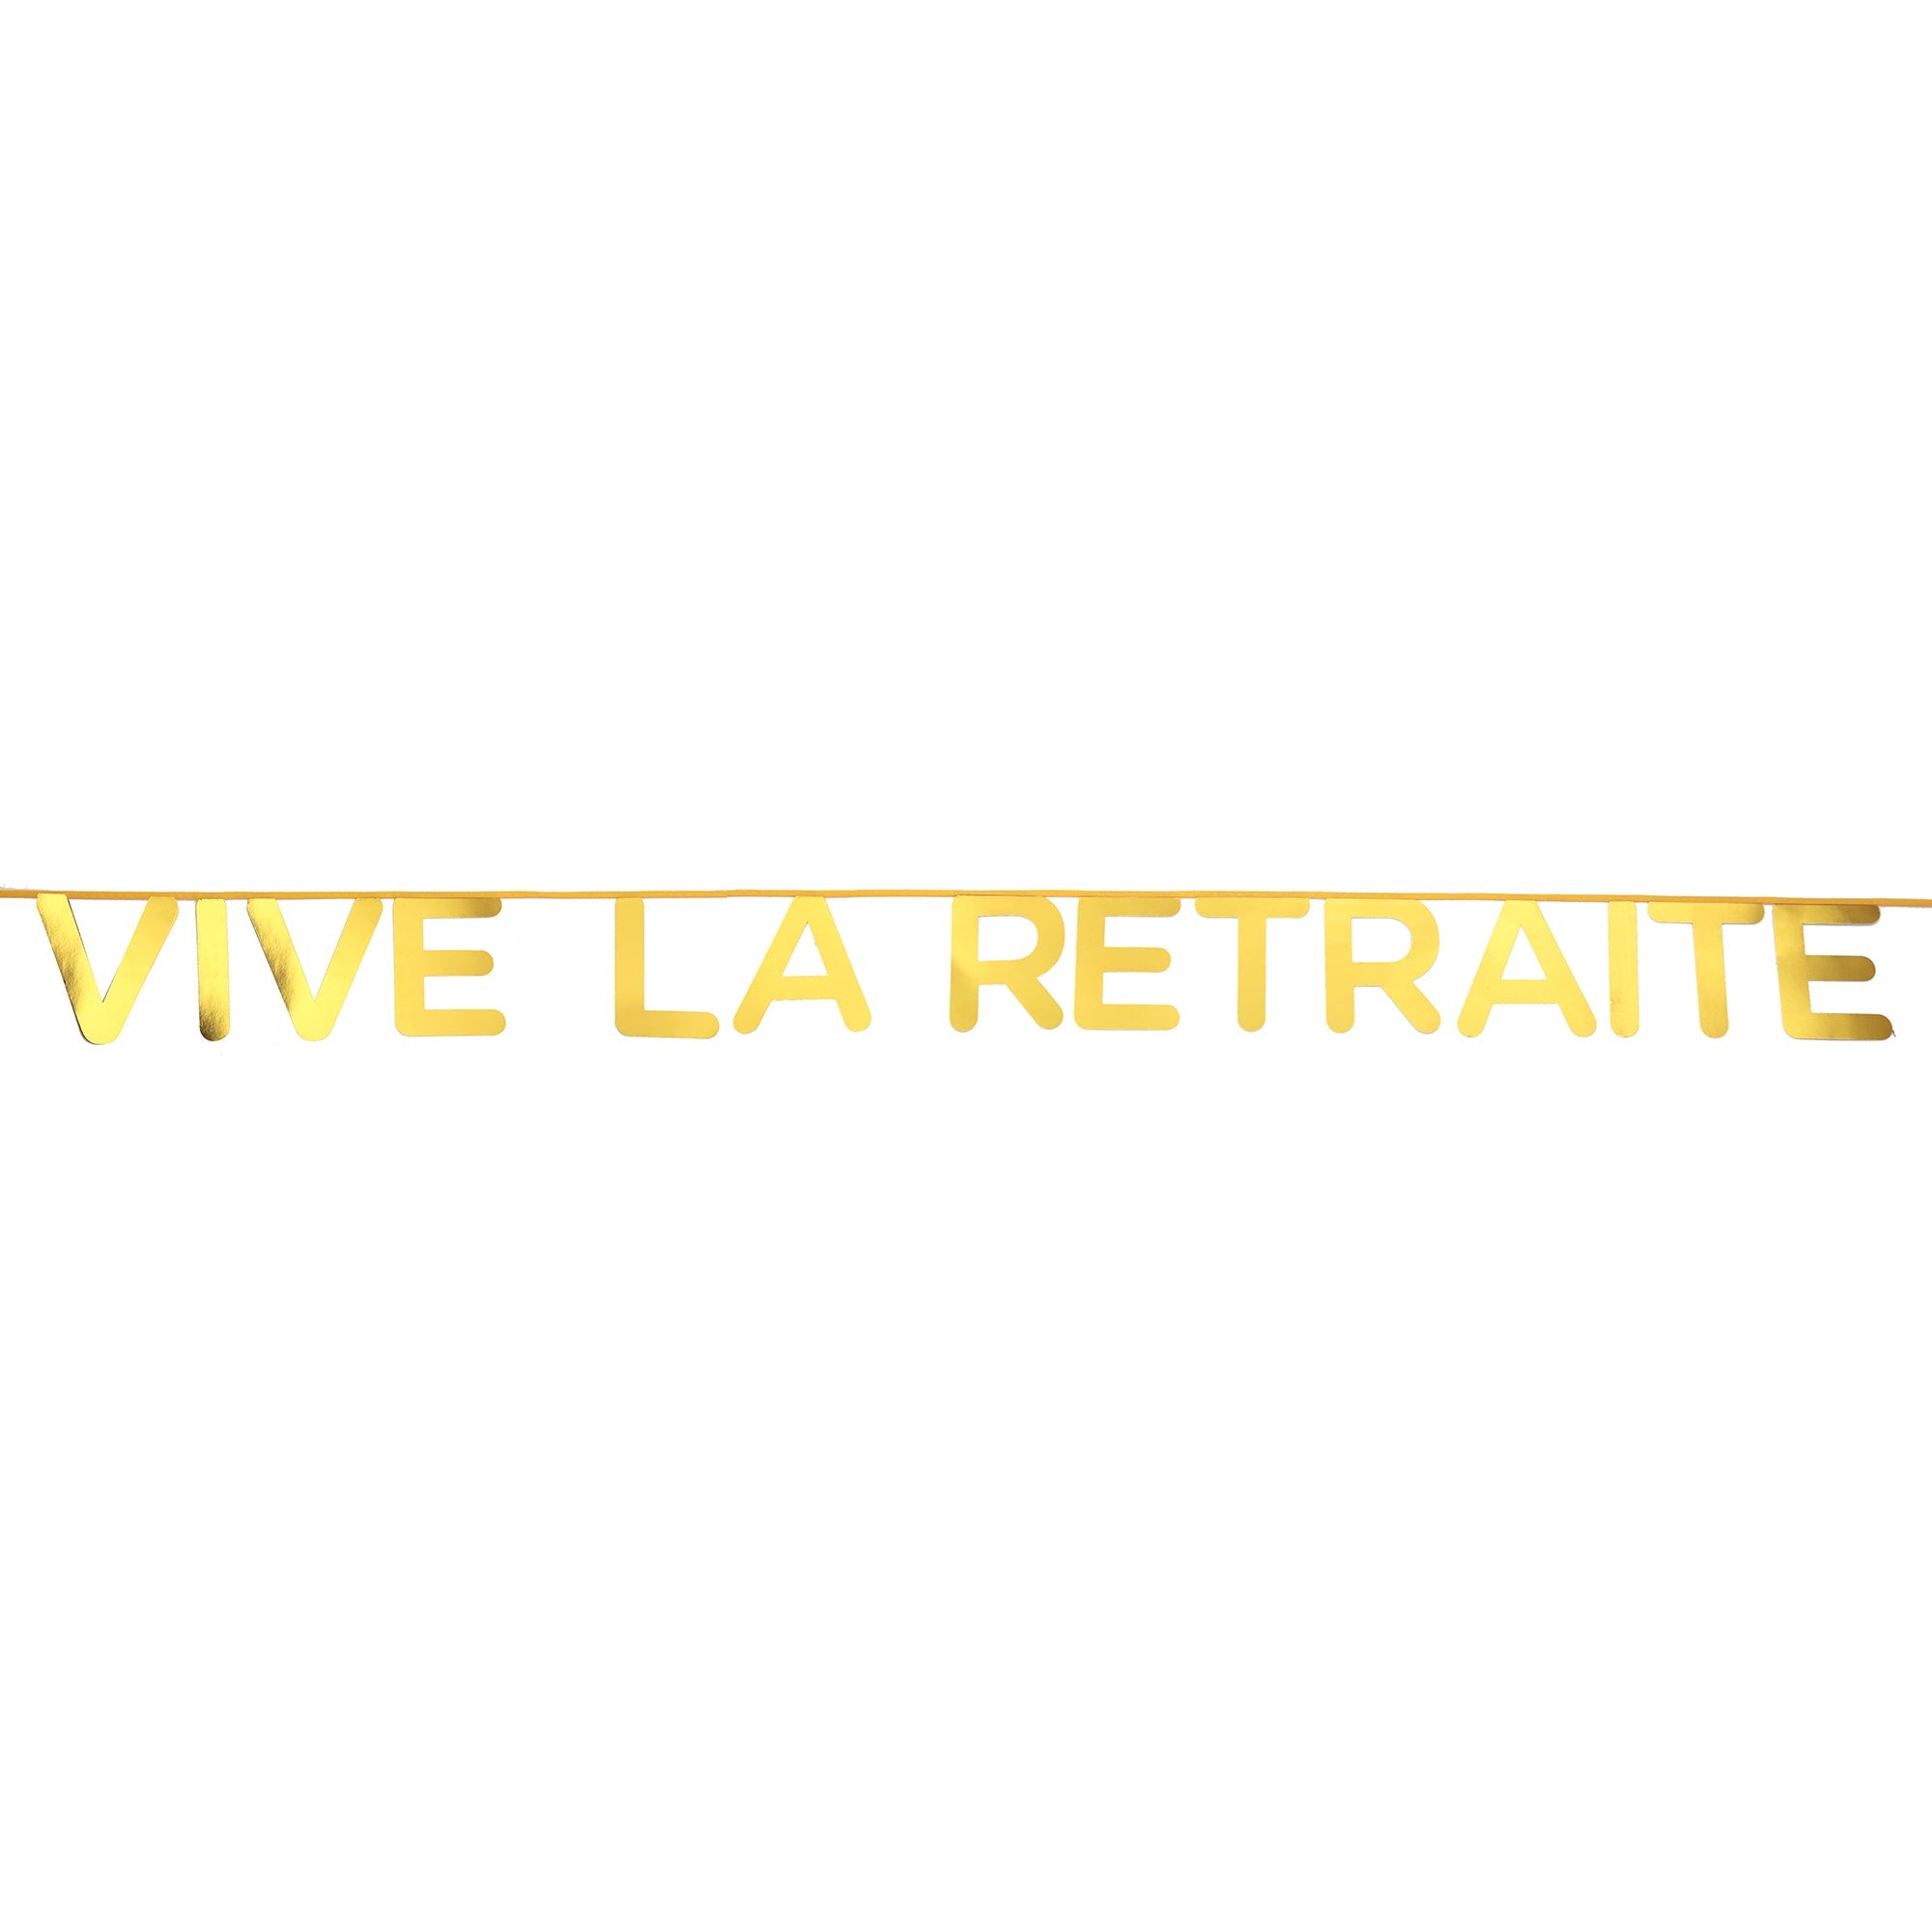 Vive La Retraite Gold Banner on Ribbon 5x98in